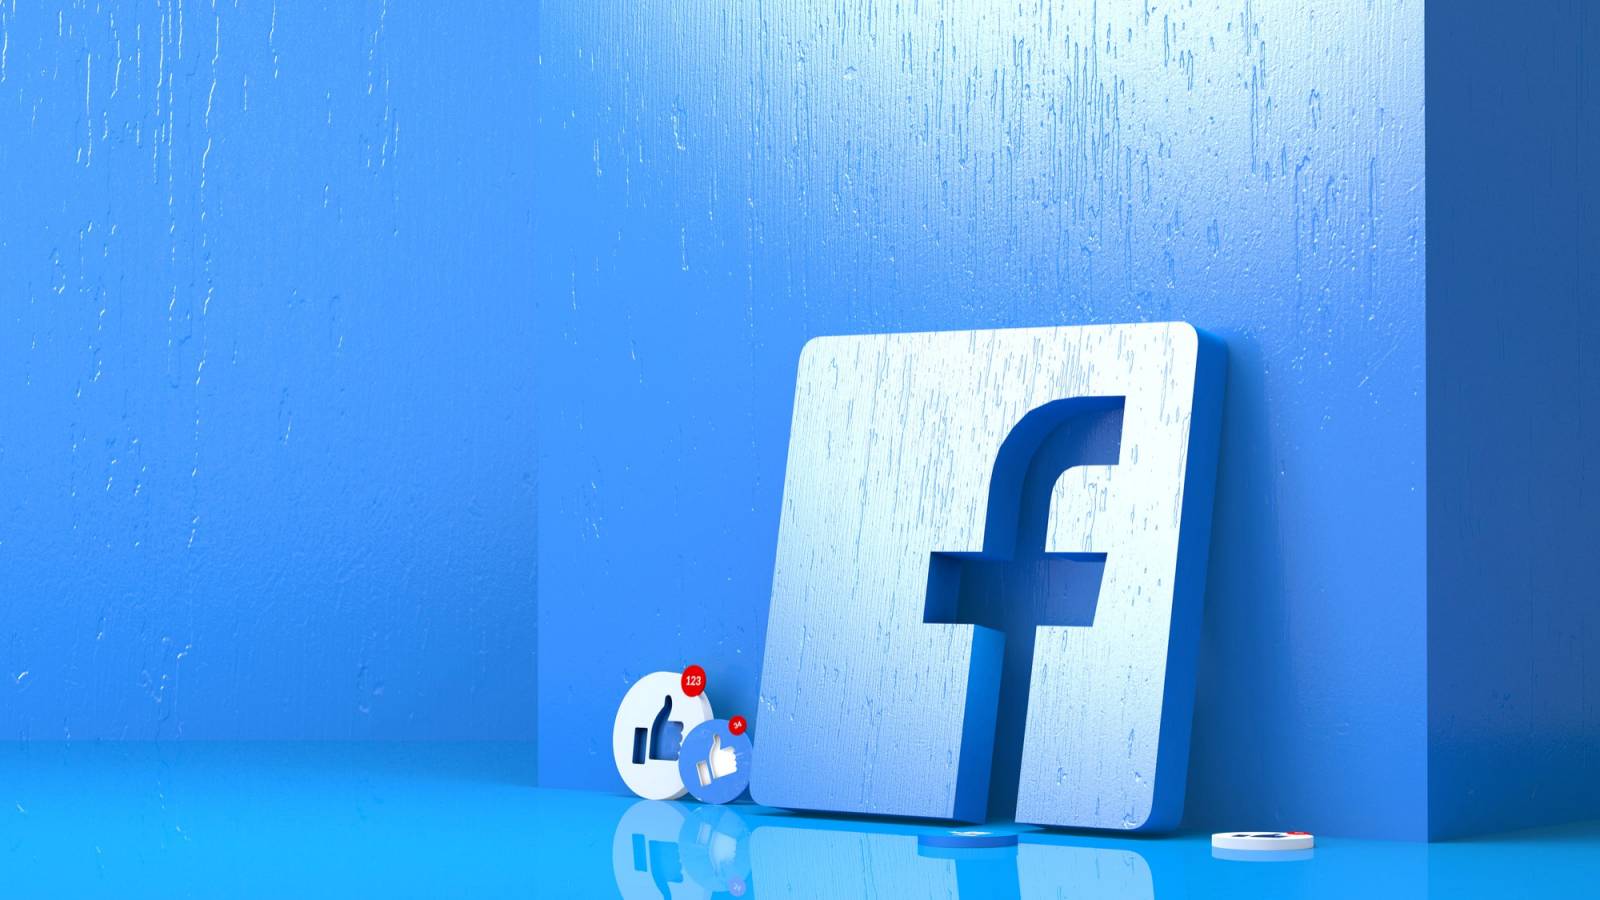 Facebook extremt farligt problem påverkar stort antal människor